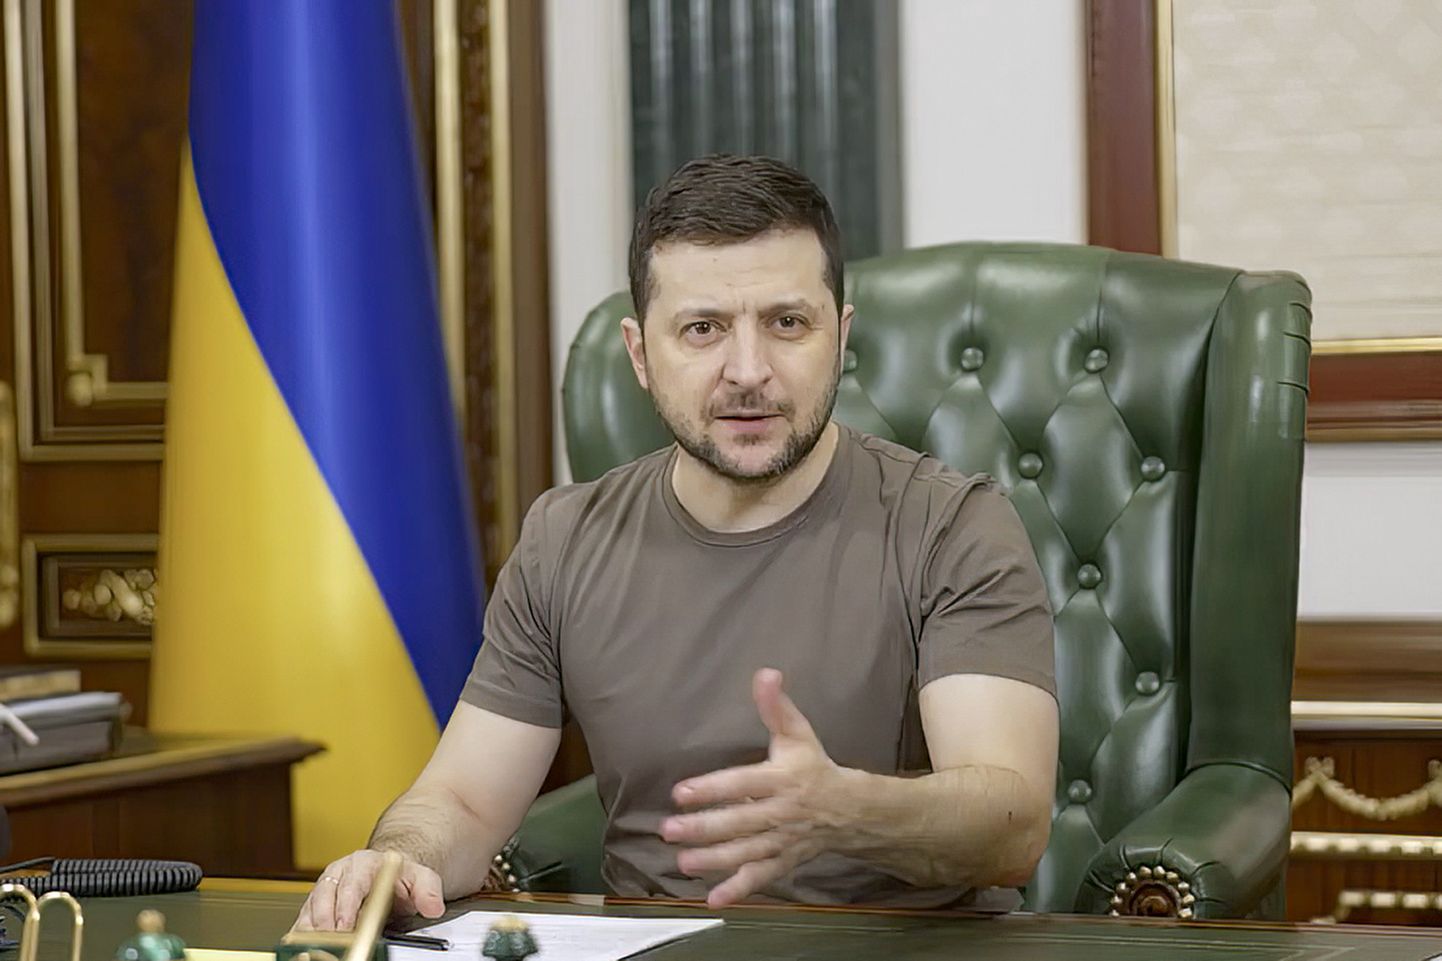 Ukraina presidendi pressiteenistuse poolt 14. märtsil 2022 avaldatud videost kaader, millel on näha Ukraina presidendi Volodõmõr Zelenskõi pöördumist ukrainlaste ja ka Venemaa poole